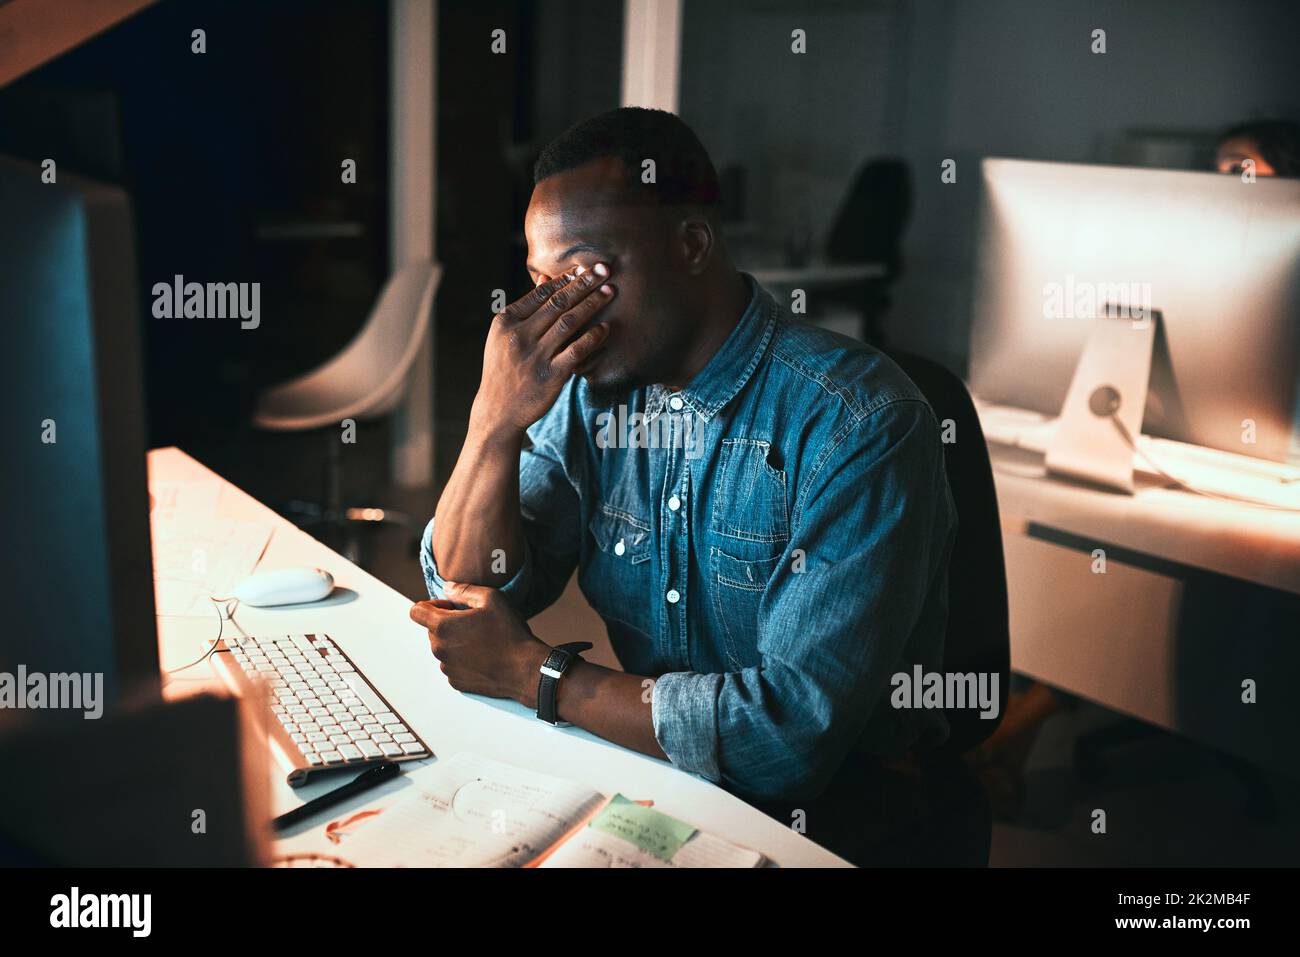 Sich durch die Frist unter Druck gesetzt zu fühlen. High-Angle-Aufnahme eines jungen männlichen Designers, der während der Arbeit am Computer im Büro gestresst aussieht. Stockfoto